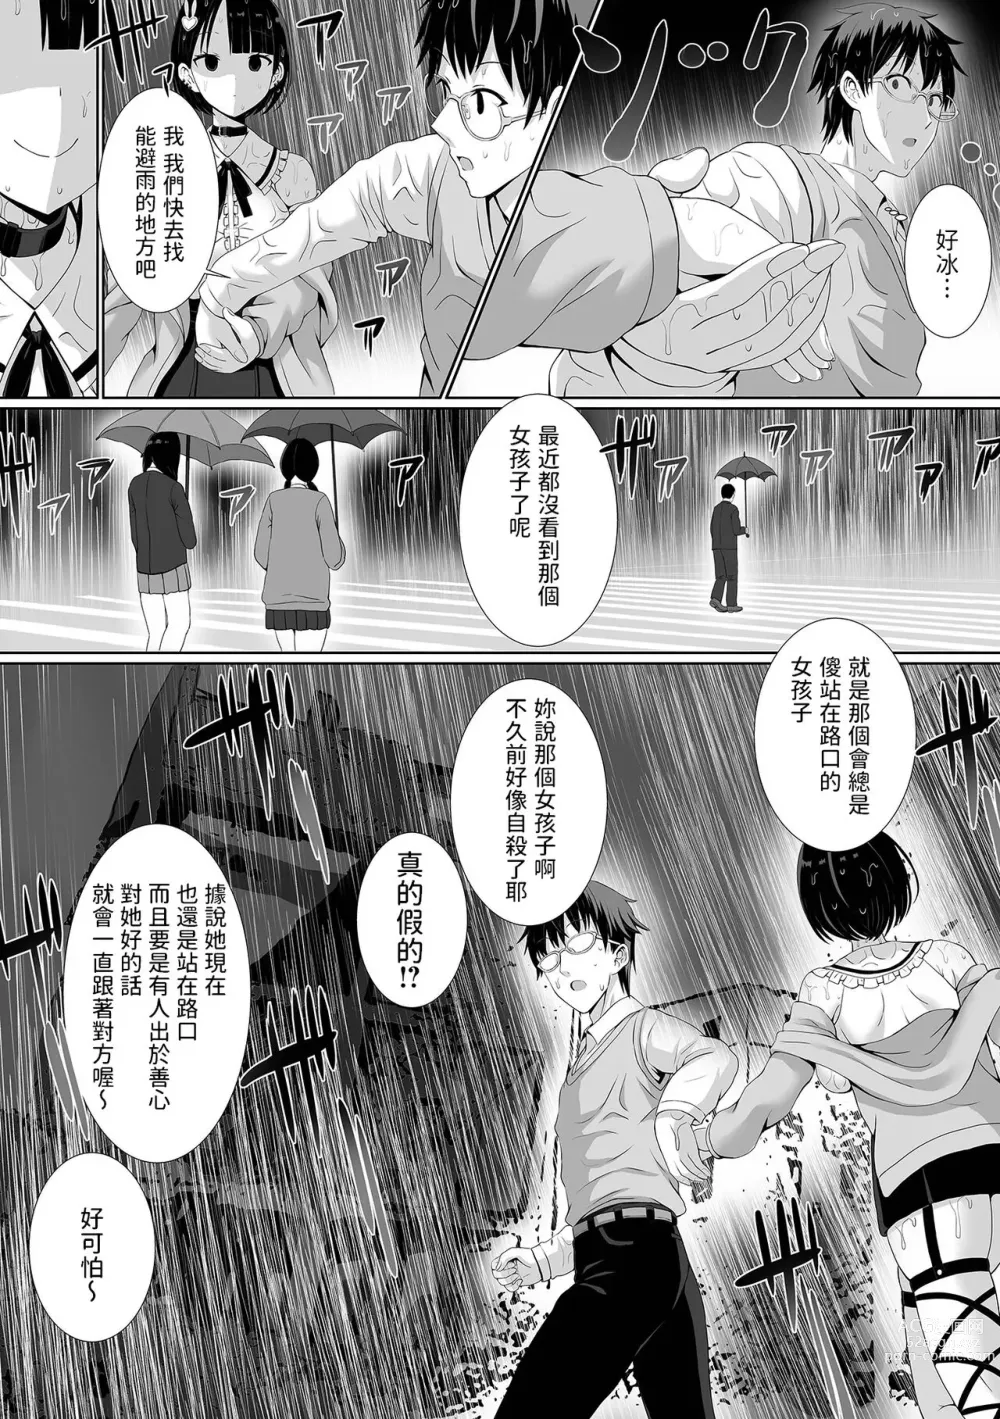 Page 2 of manga MenHeal Yuurei no Kanojo ga Dekiru made